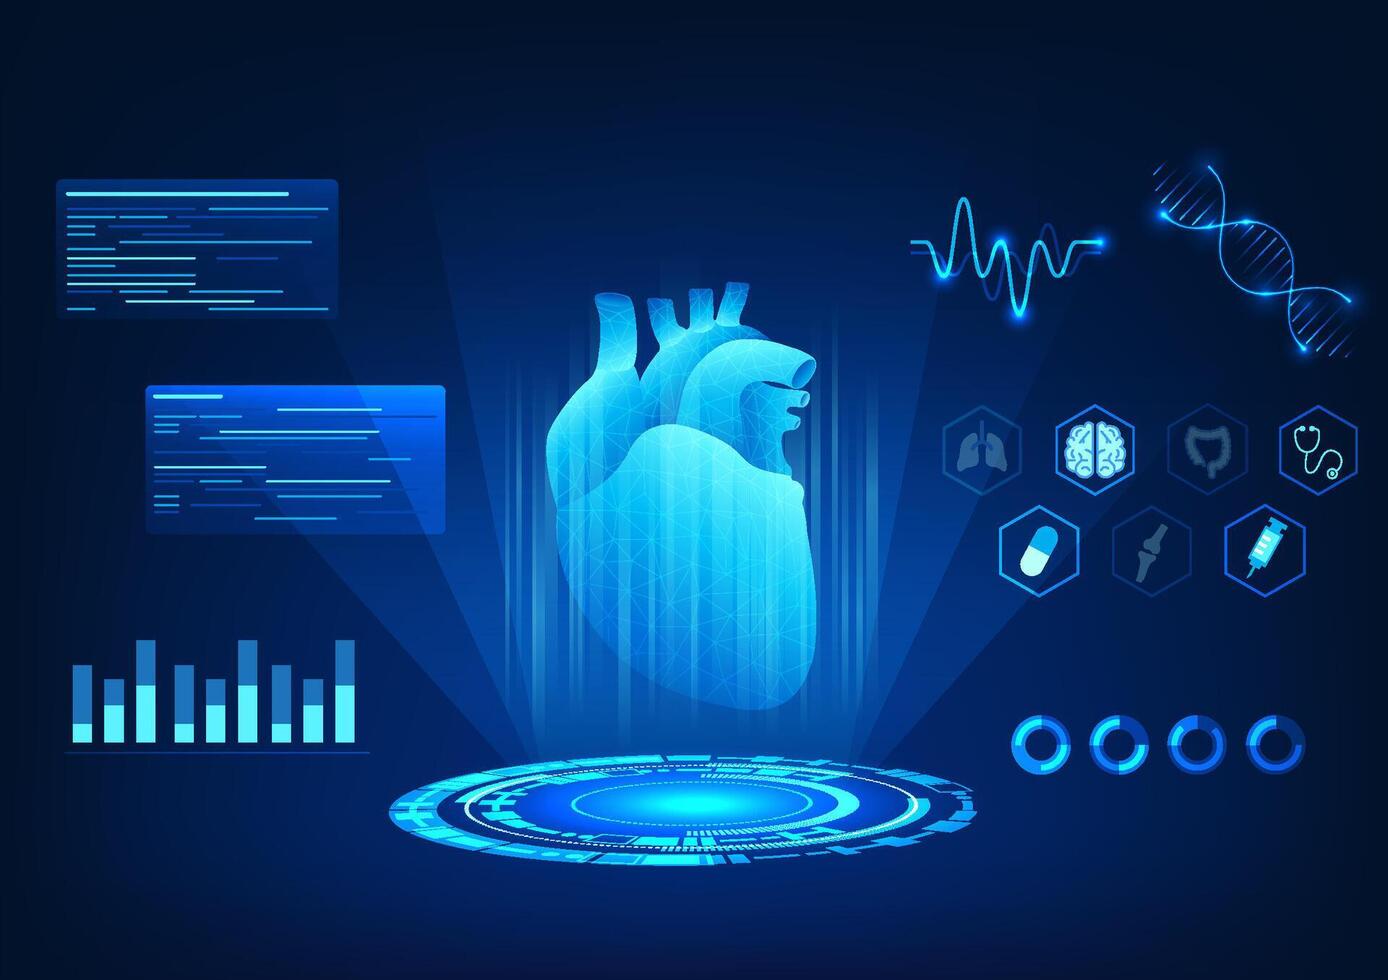 medisch technologie achtergrond hologram beeld van de hart dat shows de hart tarief langs met gedetailleerd informatie over intern organen. zo dat artsen kan diagnostiseren ziekte en voorzien behandeling vector